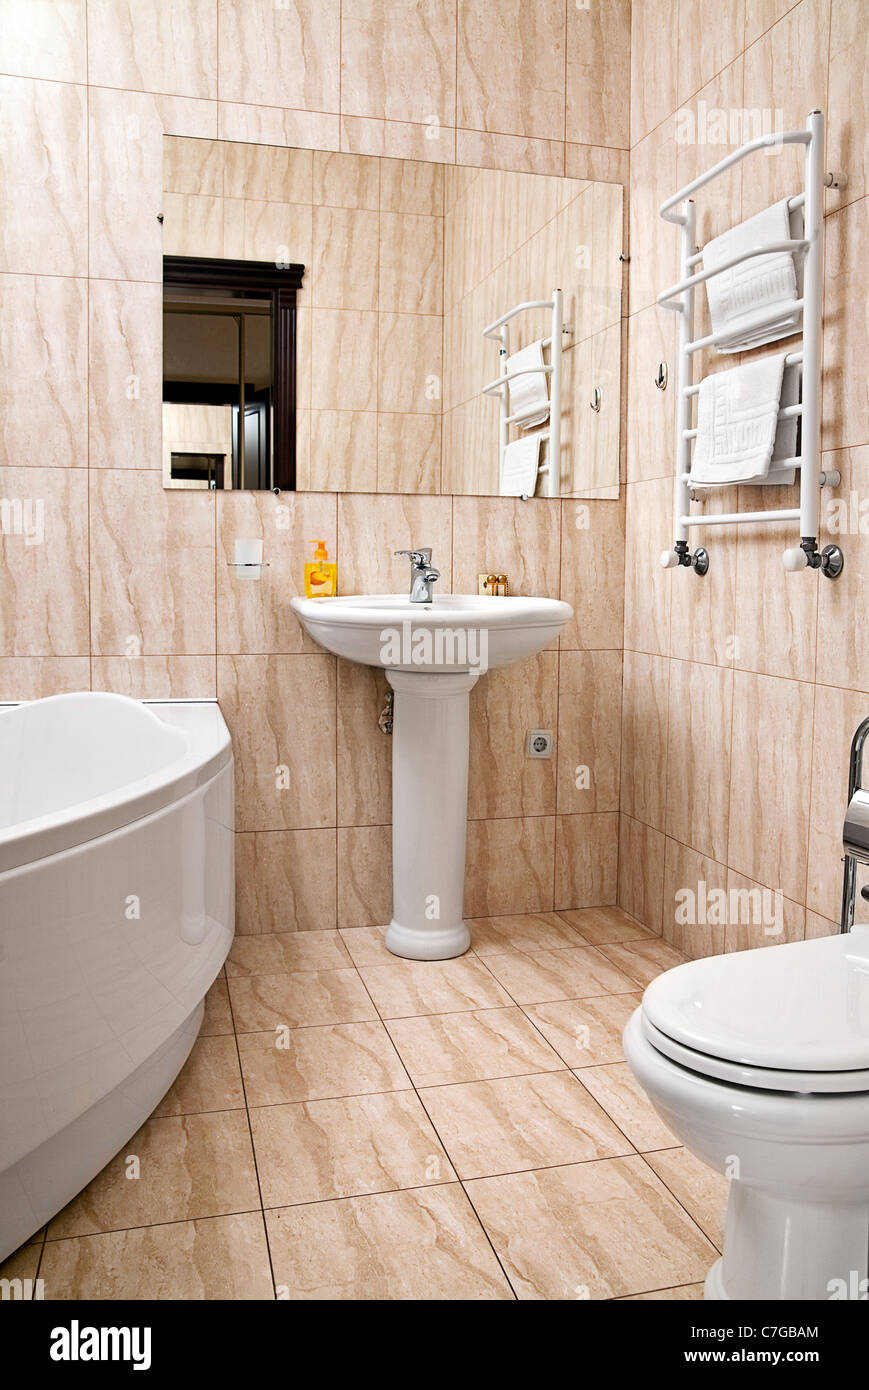 Detalle interior baño con espejo y accesorios Foto de stock